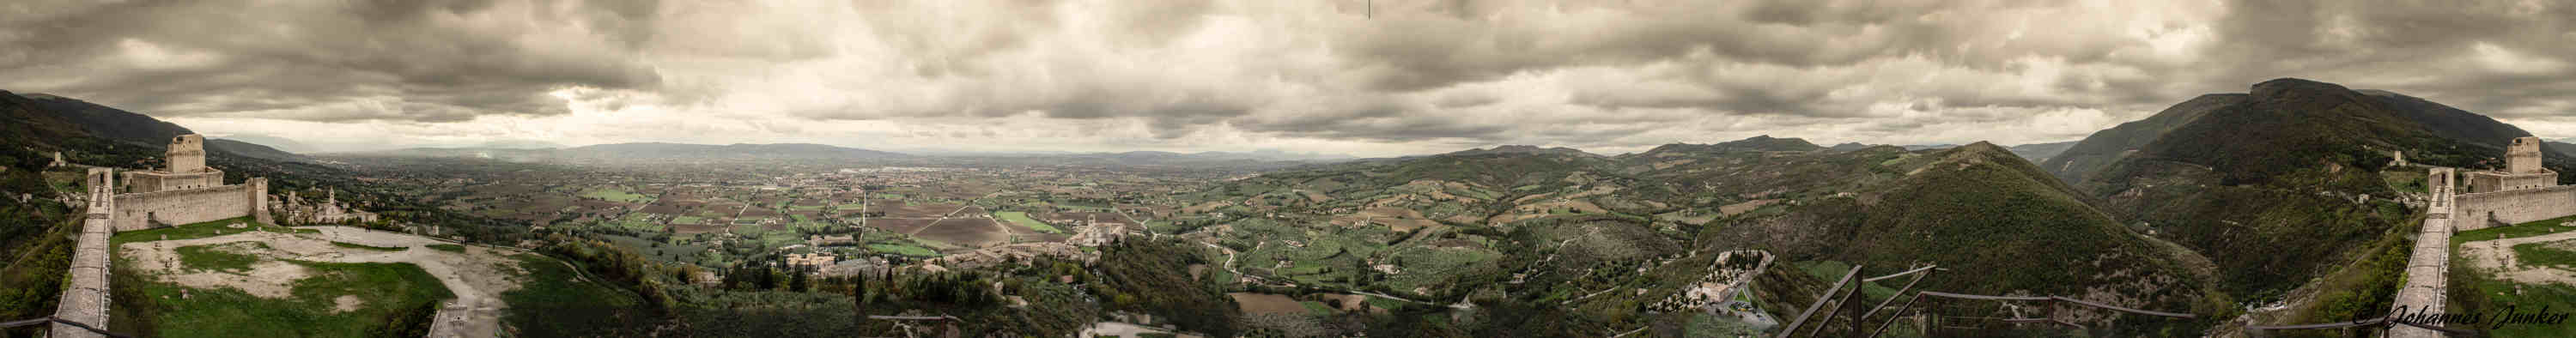 Assisi von der Rokka aus